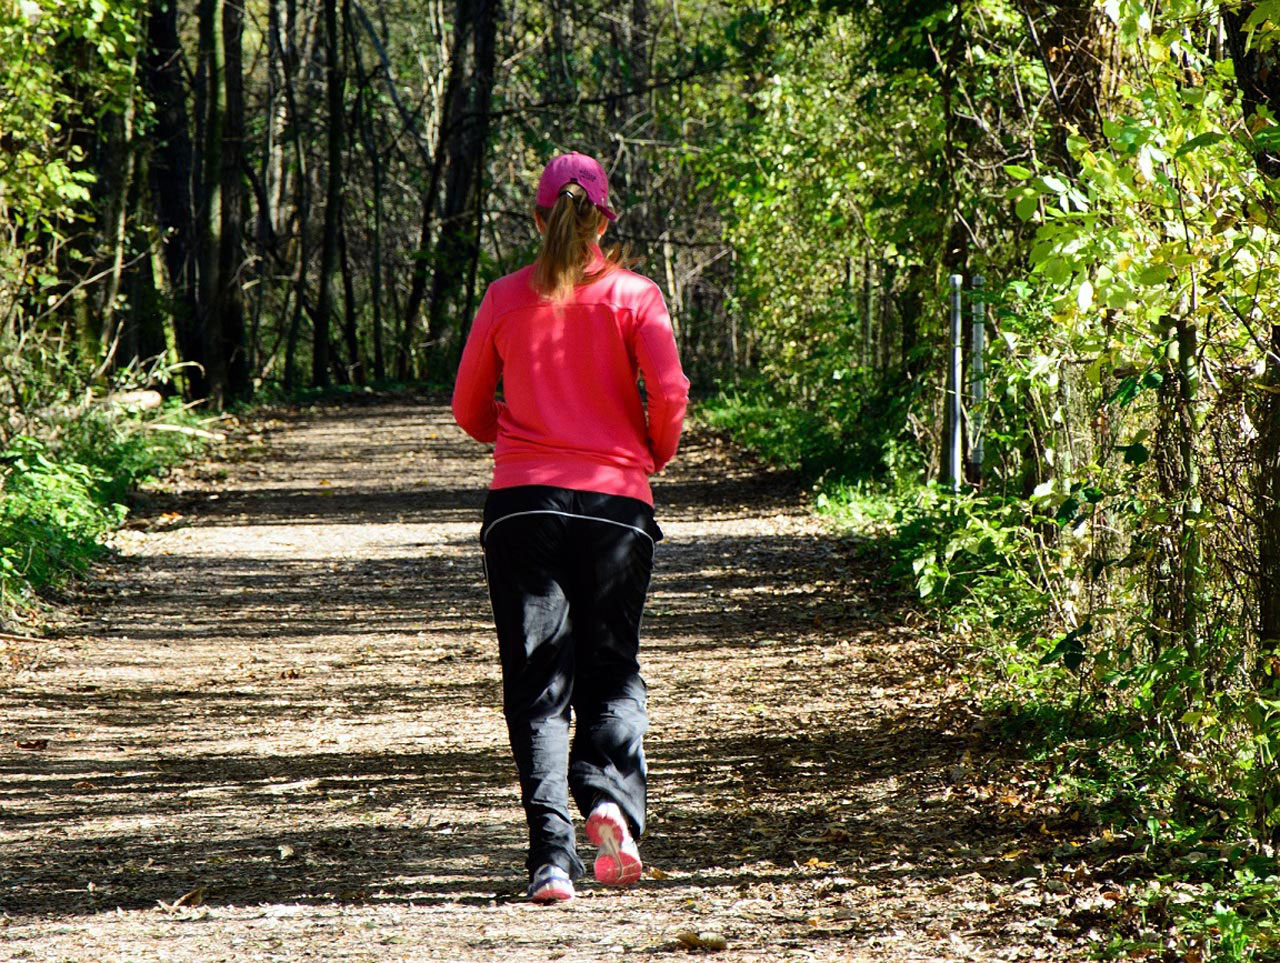 Fotografija prikazuje ženu koja trči stazom u prirodi.